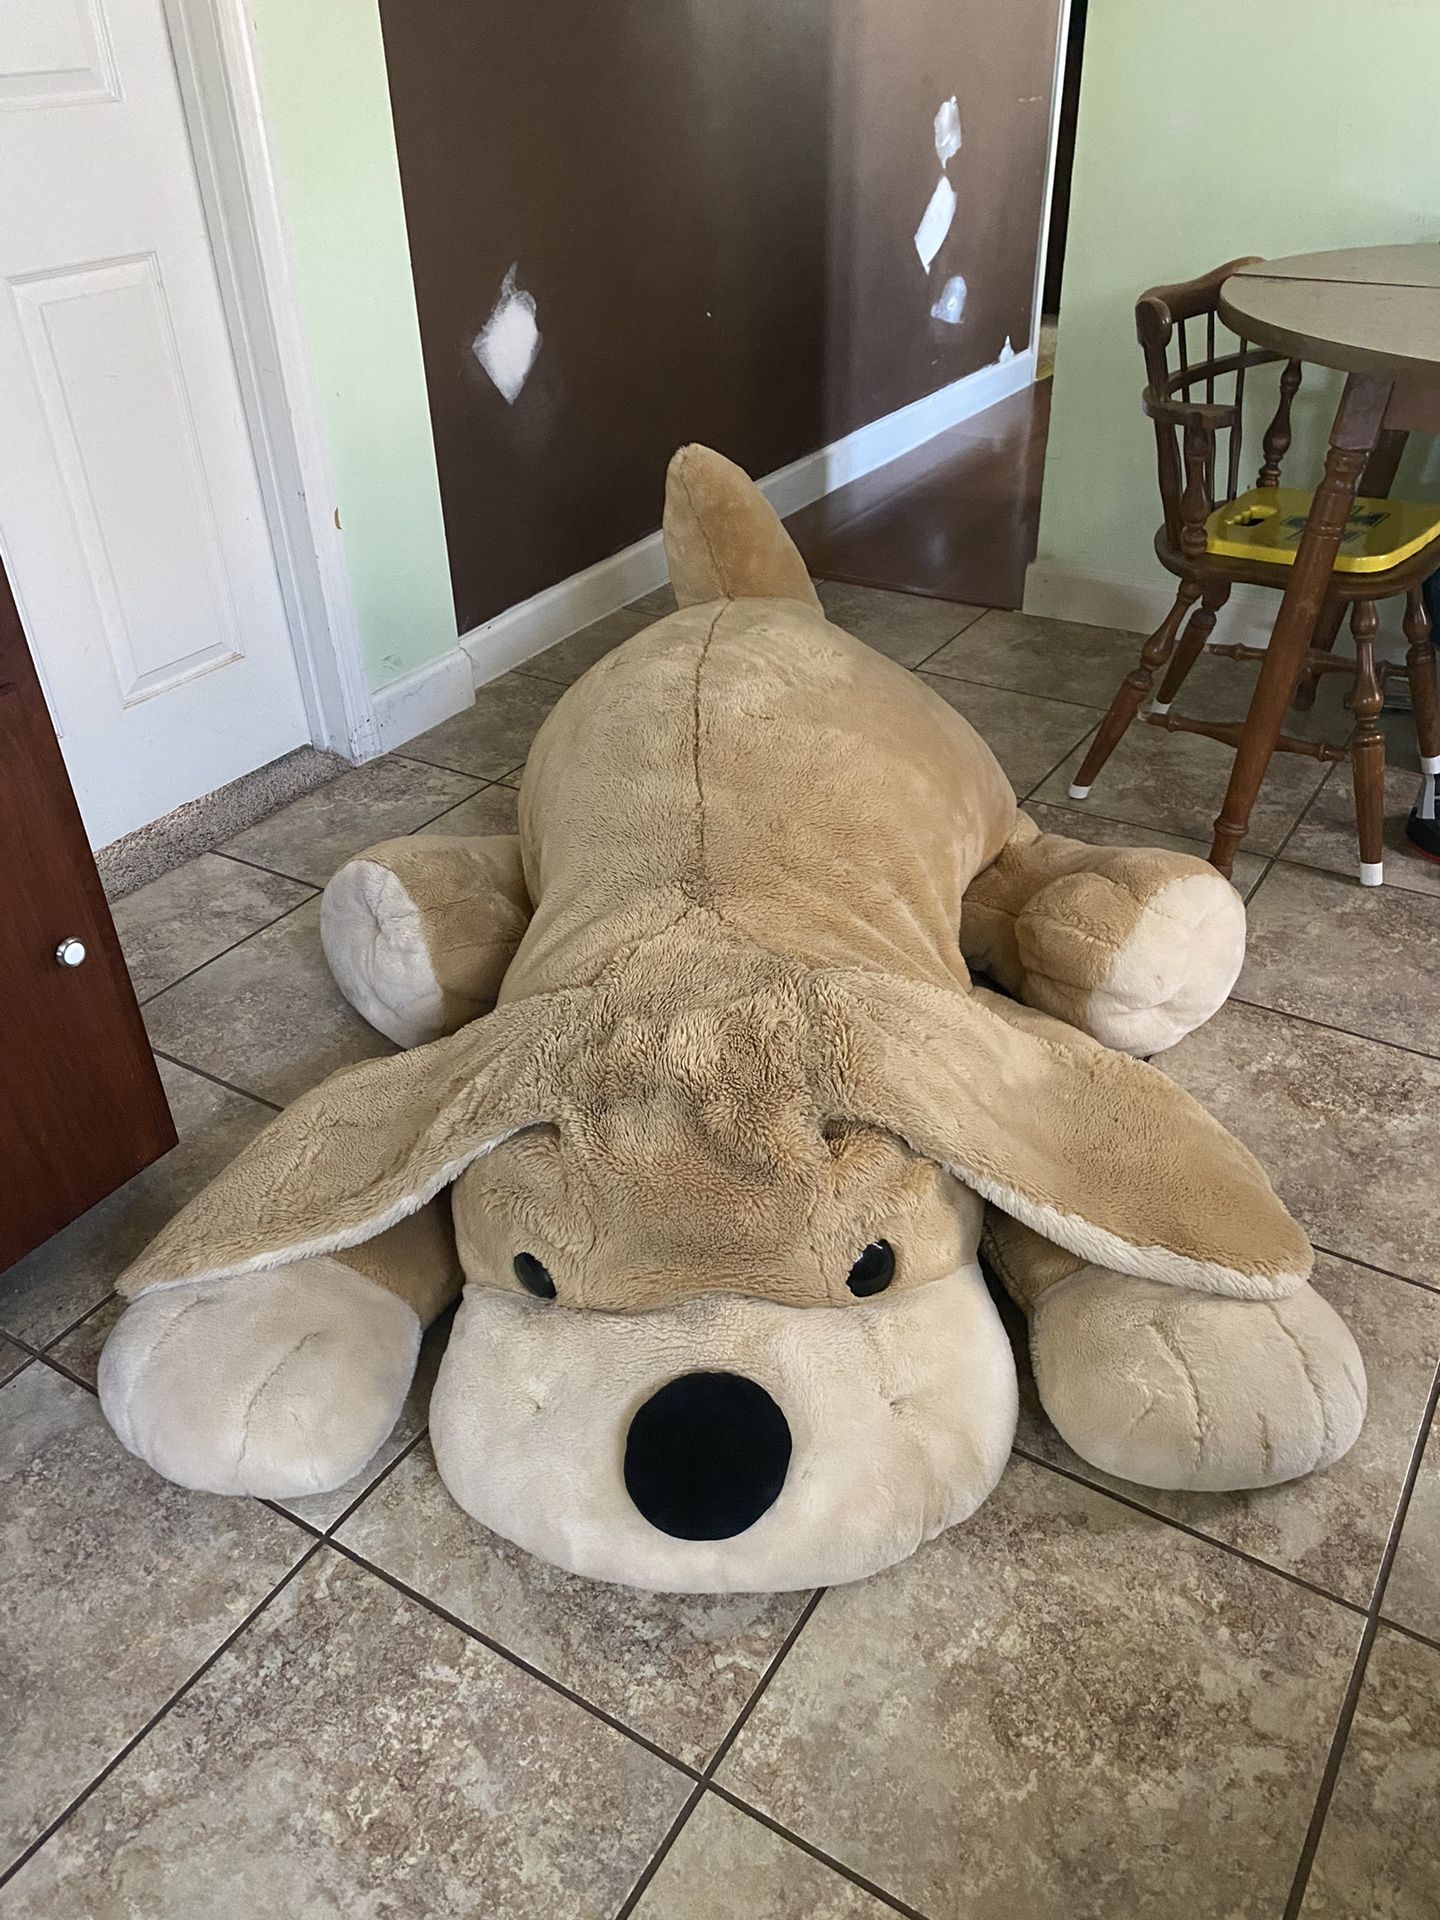 Giant FAO Schwarz Stuffed Dog $25